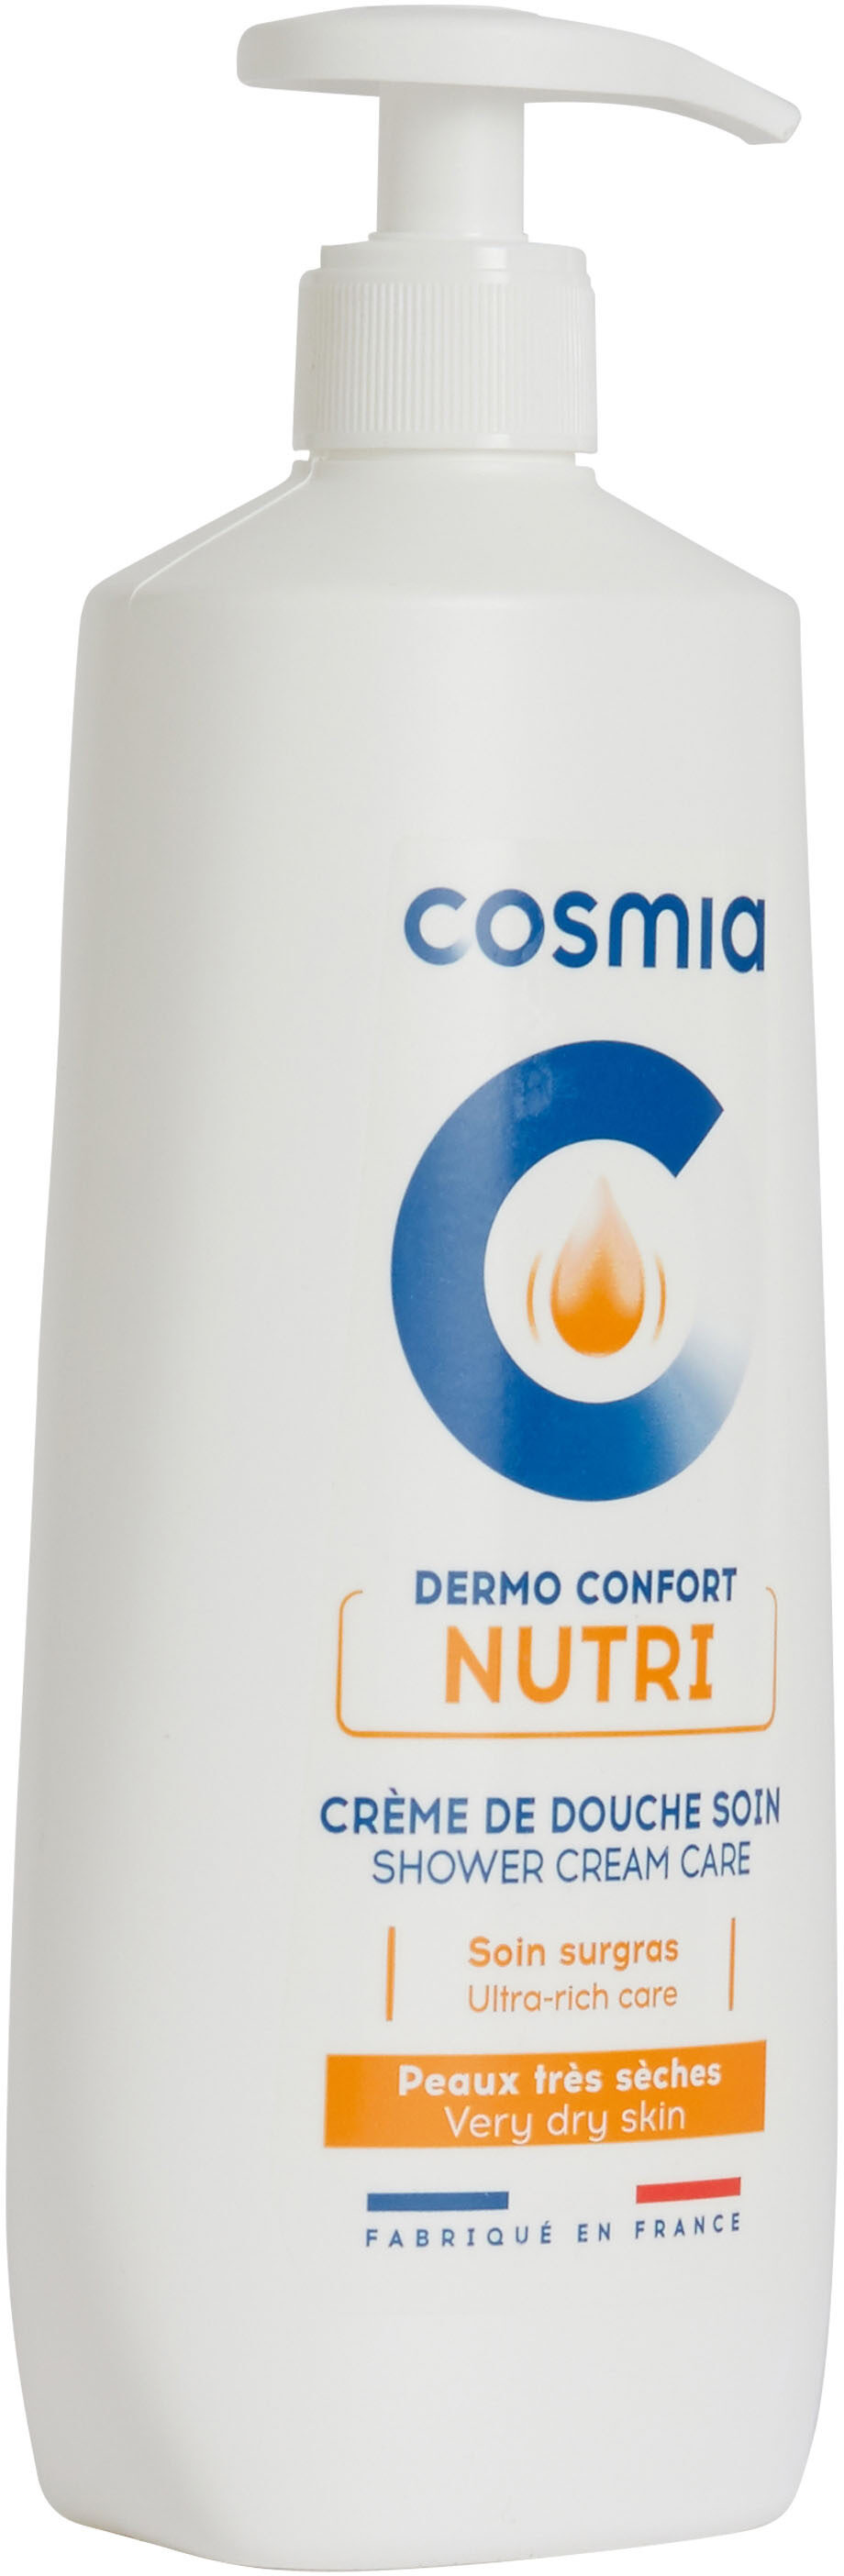 Dermo confort nutri creme de douche soin - Produkt - fr